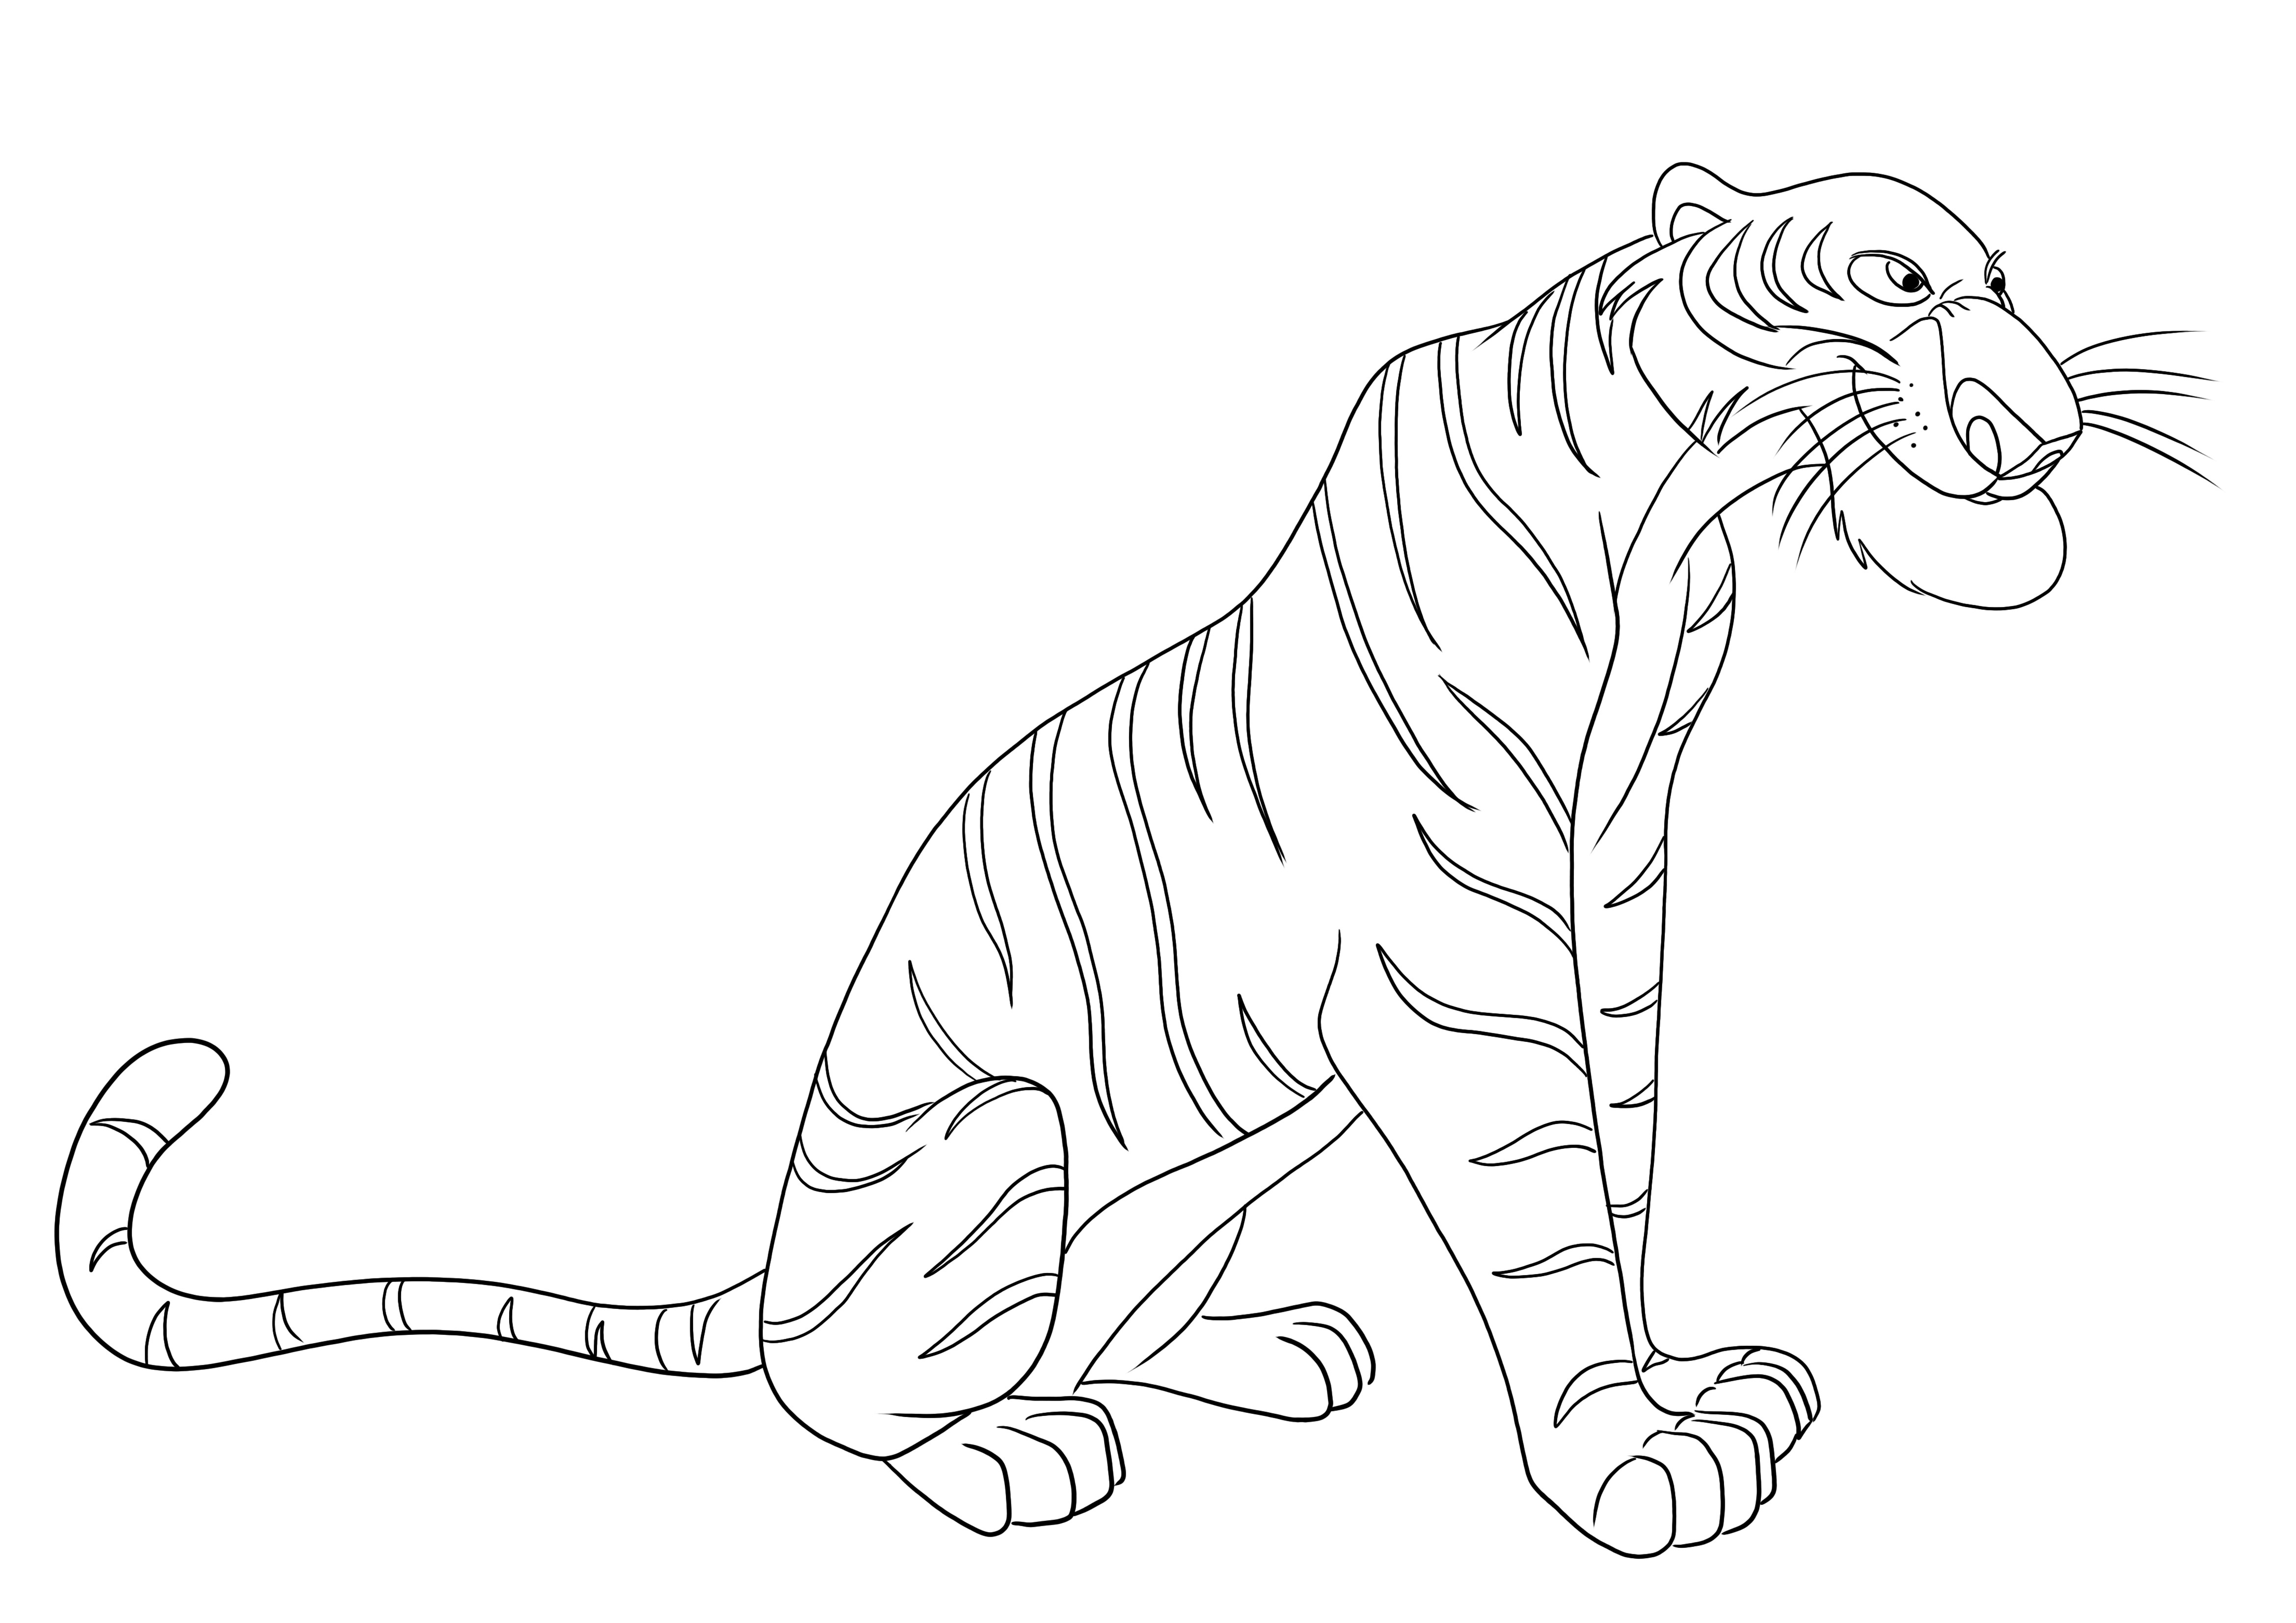 Immagine da colorare Shere Khan la tigre del libro della giungla da scaricare gratuitamente